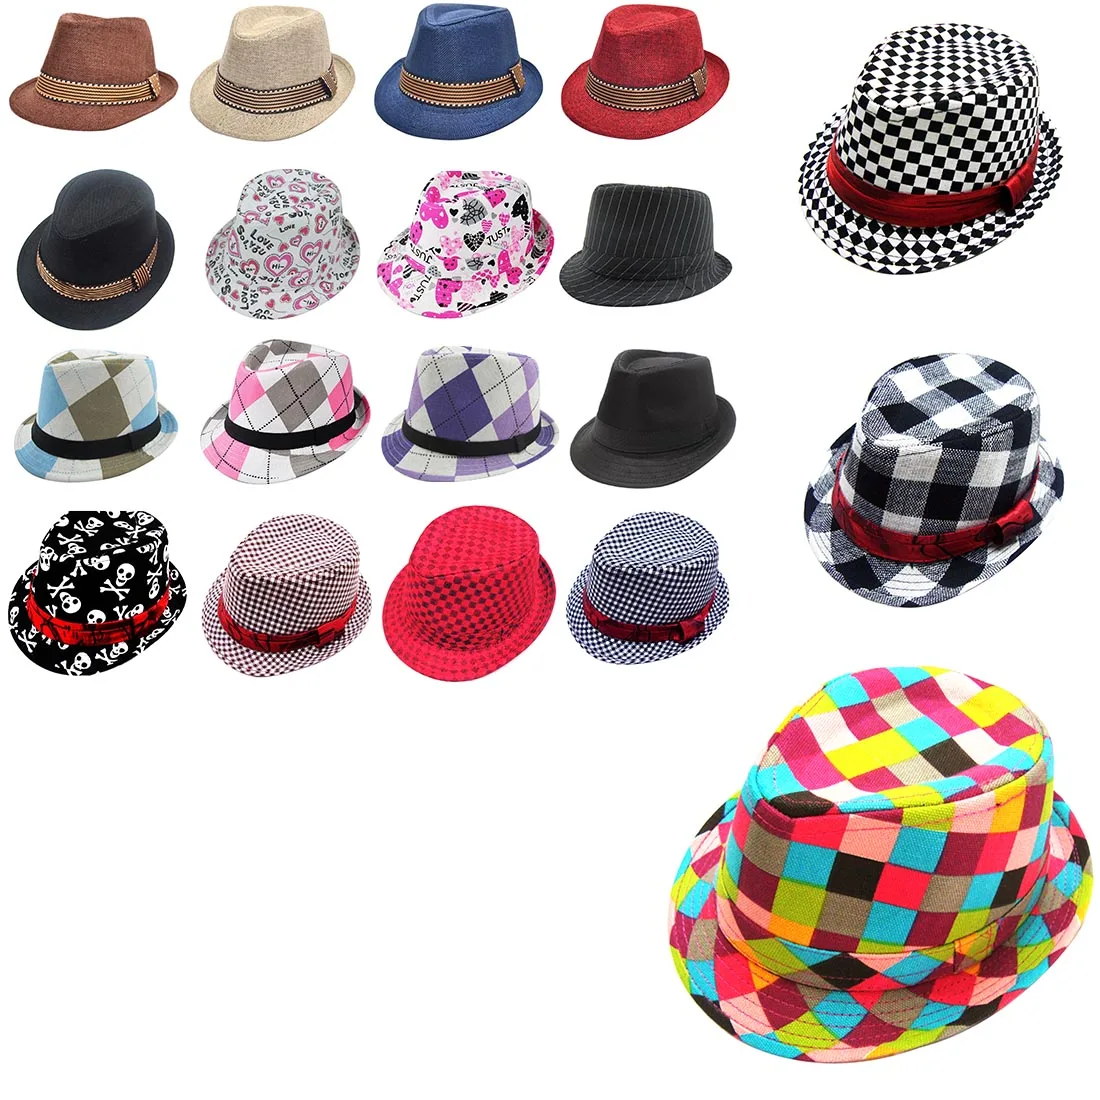 Новая детская шапочка для мальчиков и девочек в стиле джаз, хлопковая шляпа-федора, лучший подарок для детей 2-6 лет